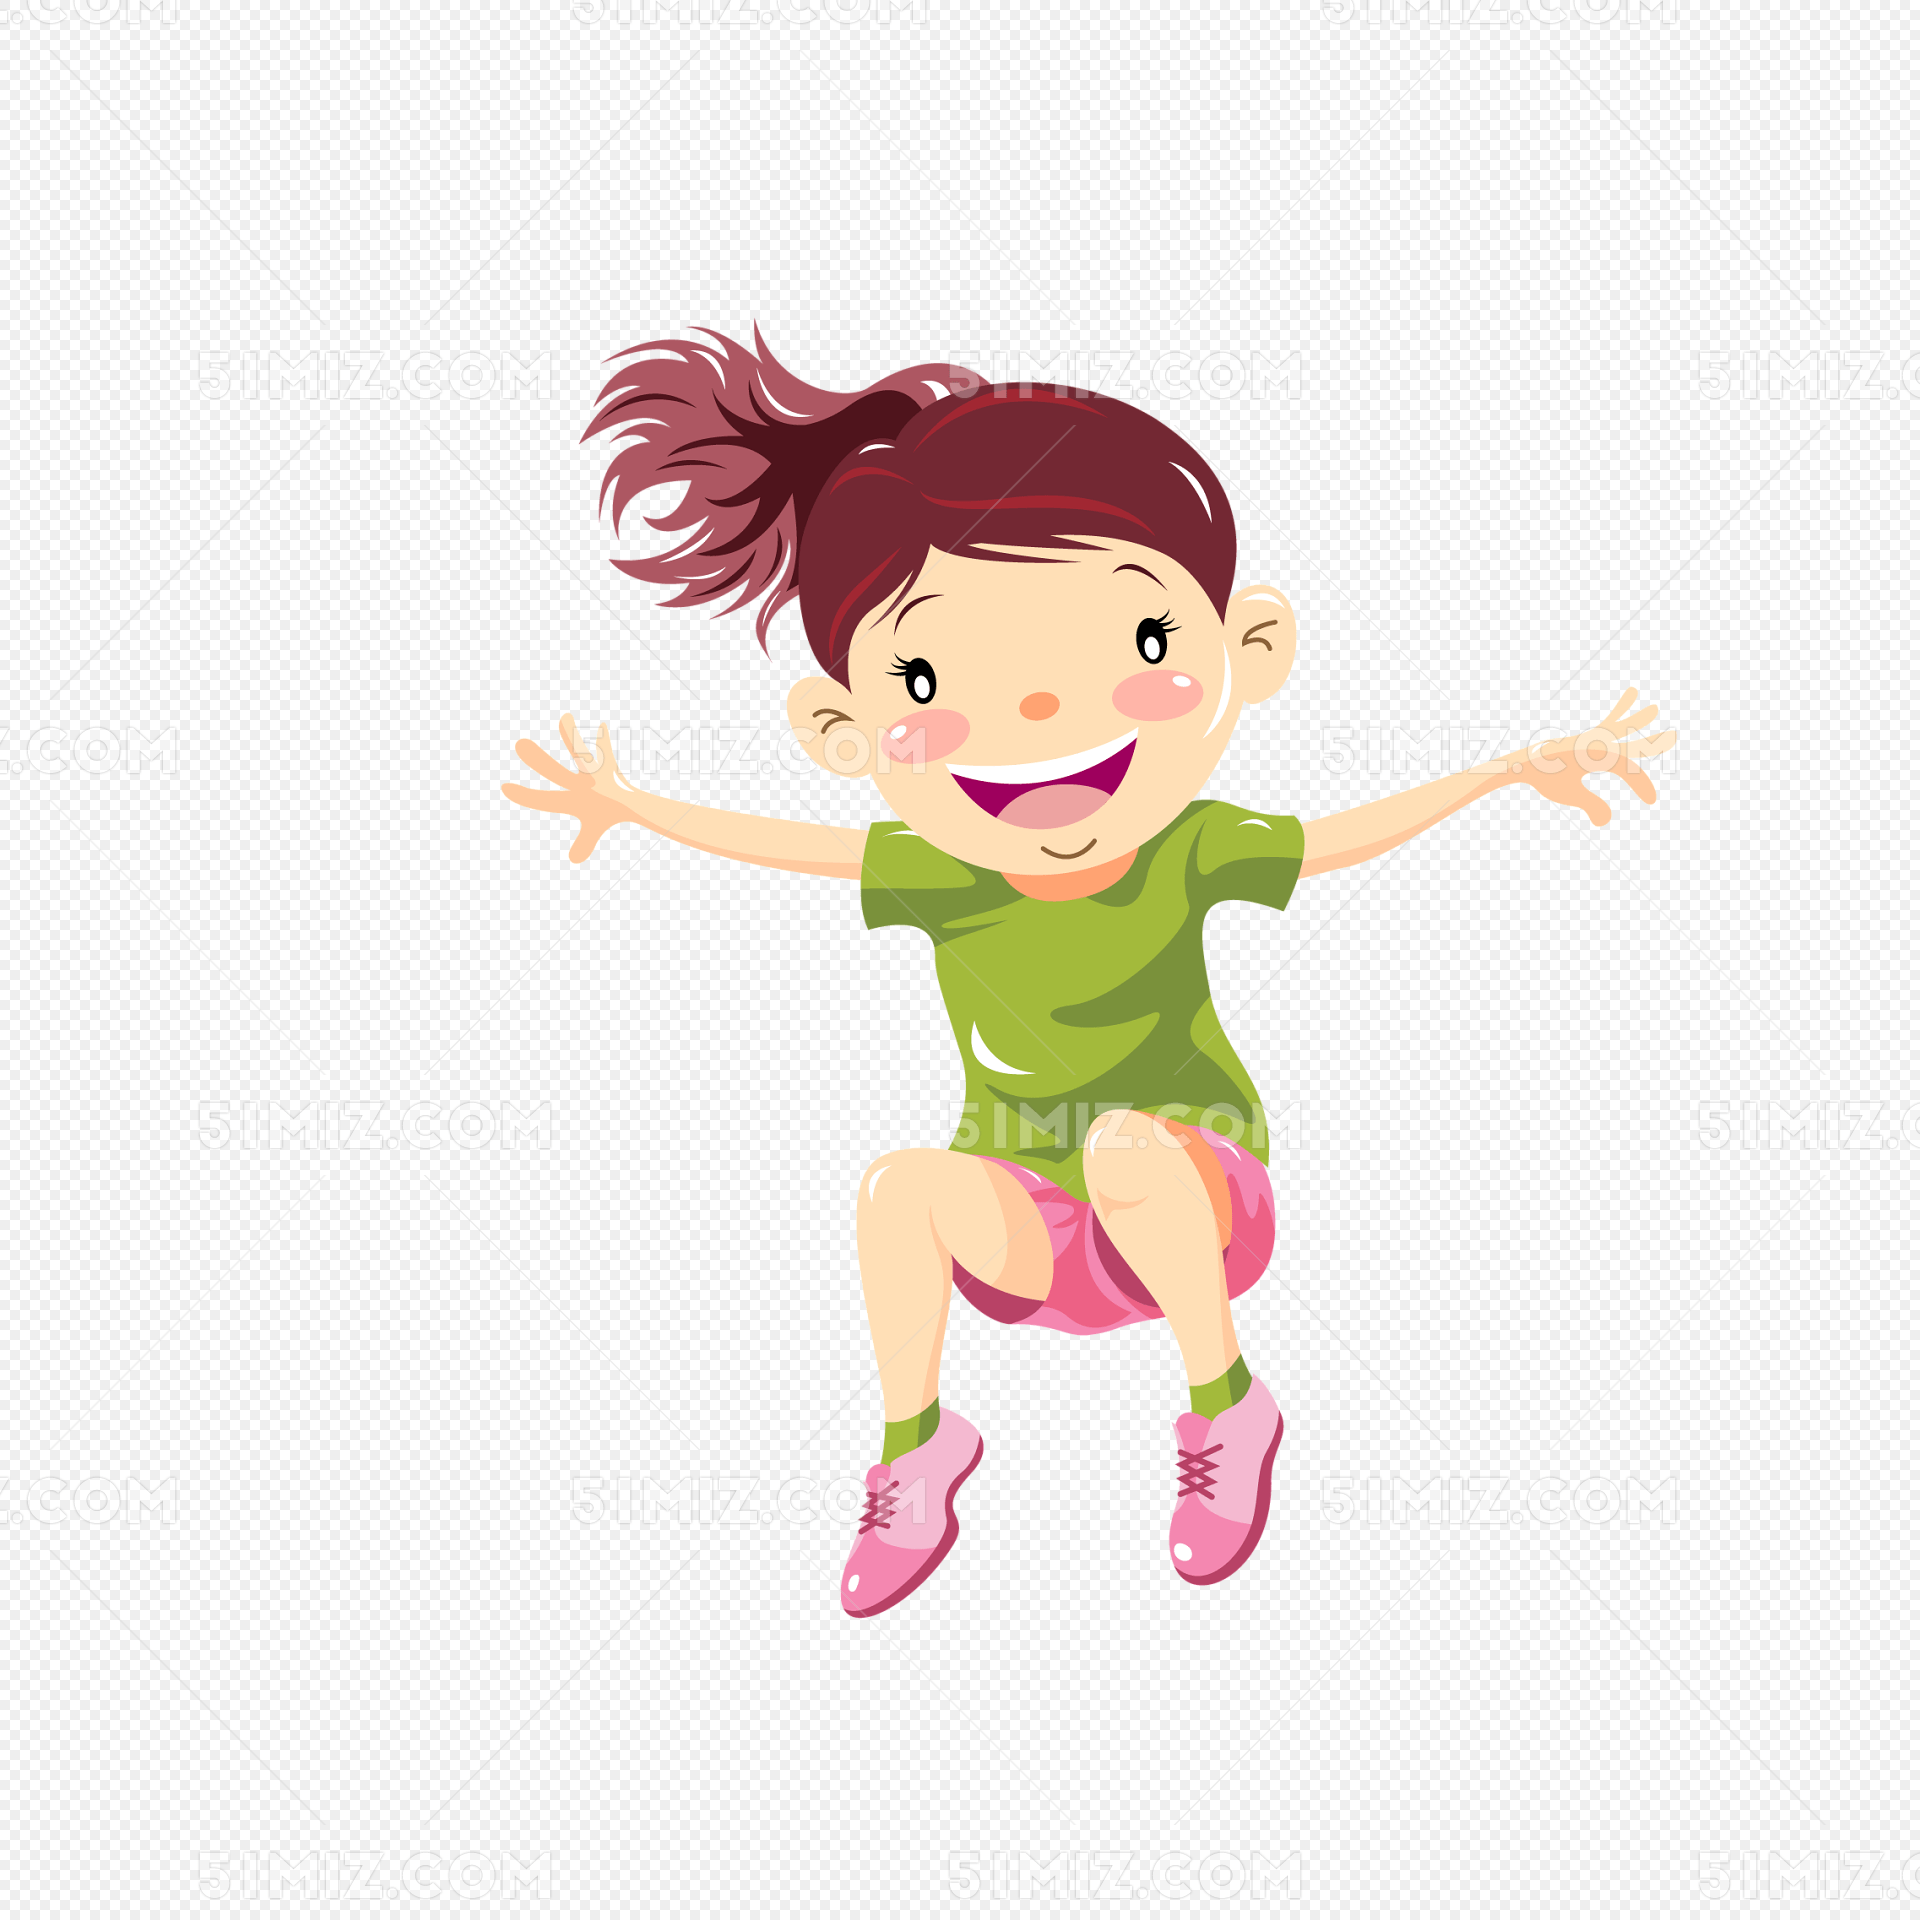 演奏跳跃的滑稽的女孩享受移动新的家 库存图片. 图片 包括有 测试, 庄园, 享用, 投资, 女儿, 贷款 - 136878025